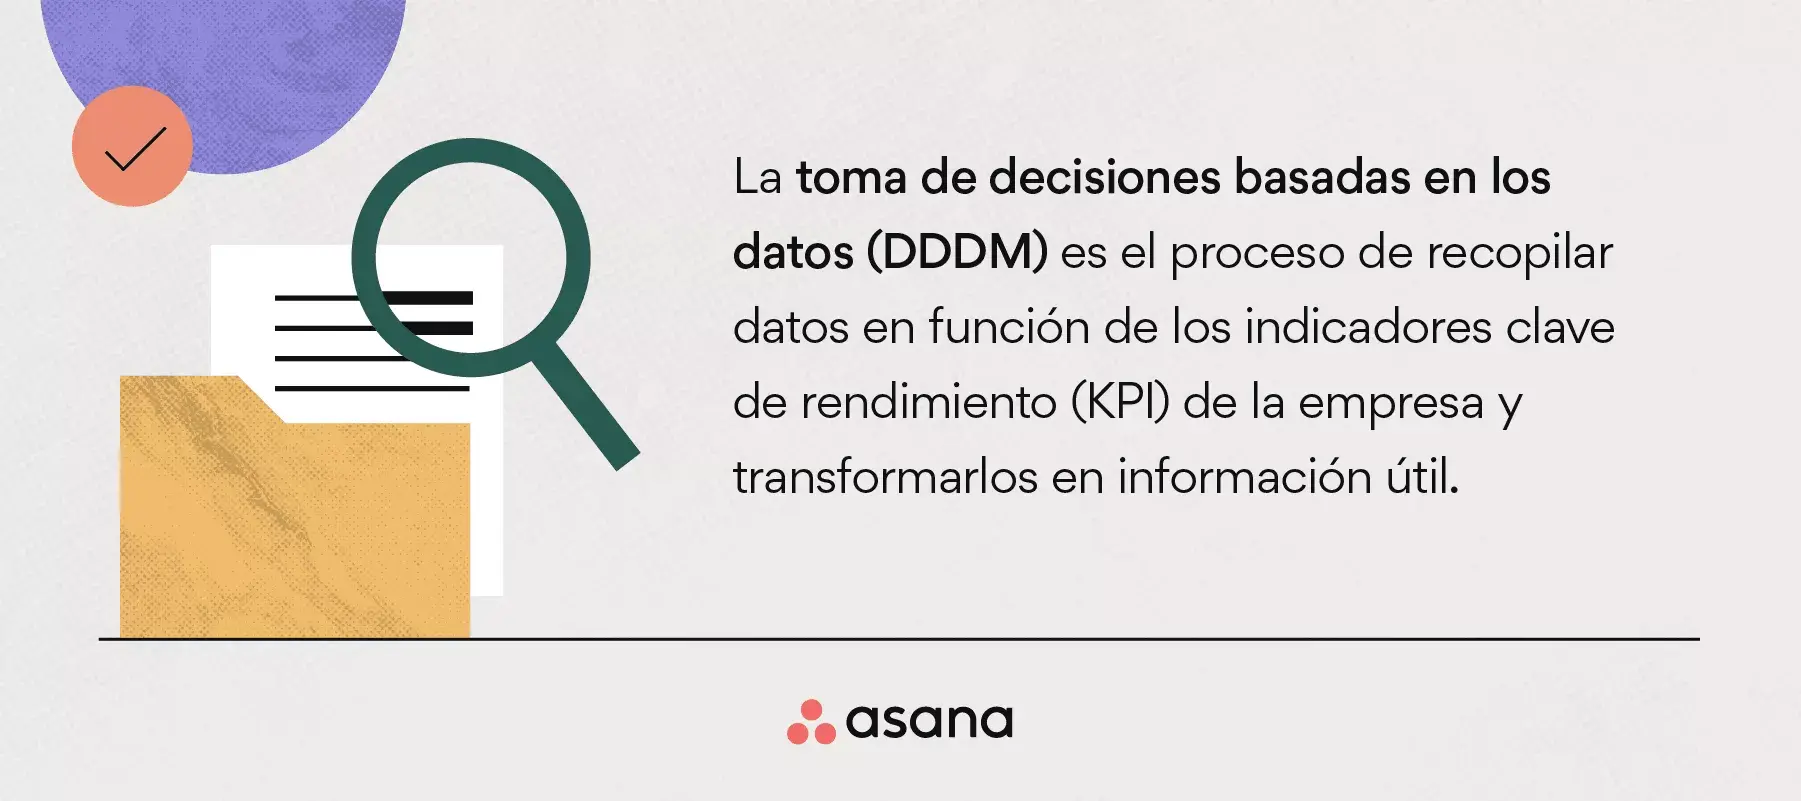 [Ilustración integrada] ¿Qué es la toma de decisiones basadas en los datos (DDDM)? (infografía)